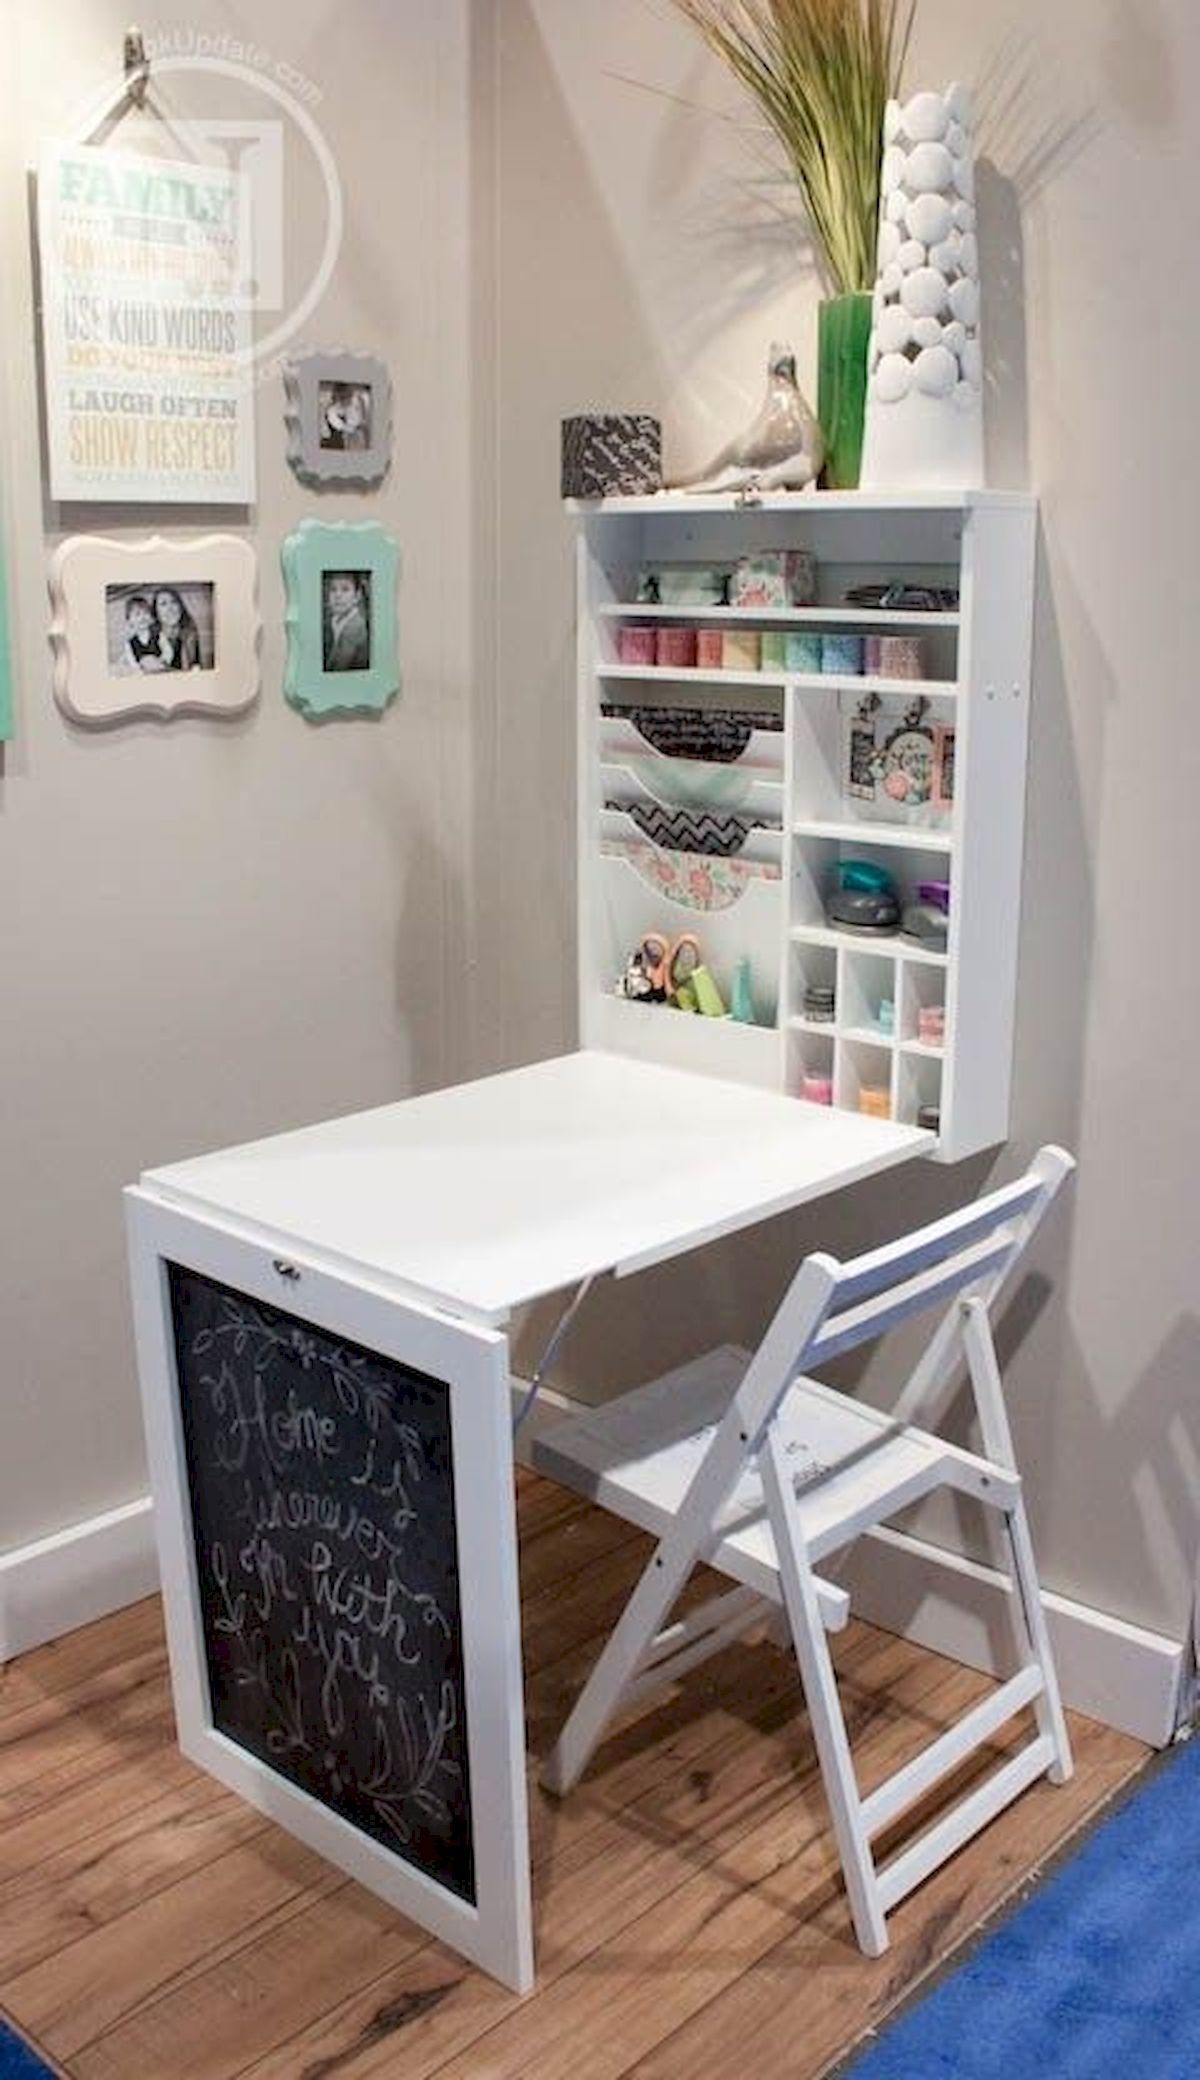 corner desk for child's room